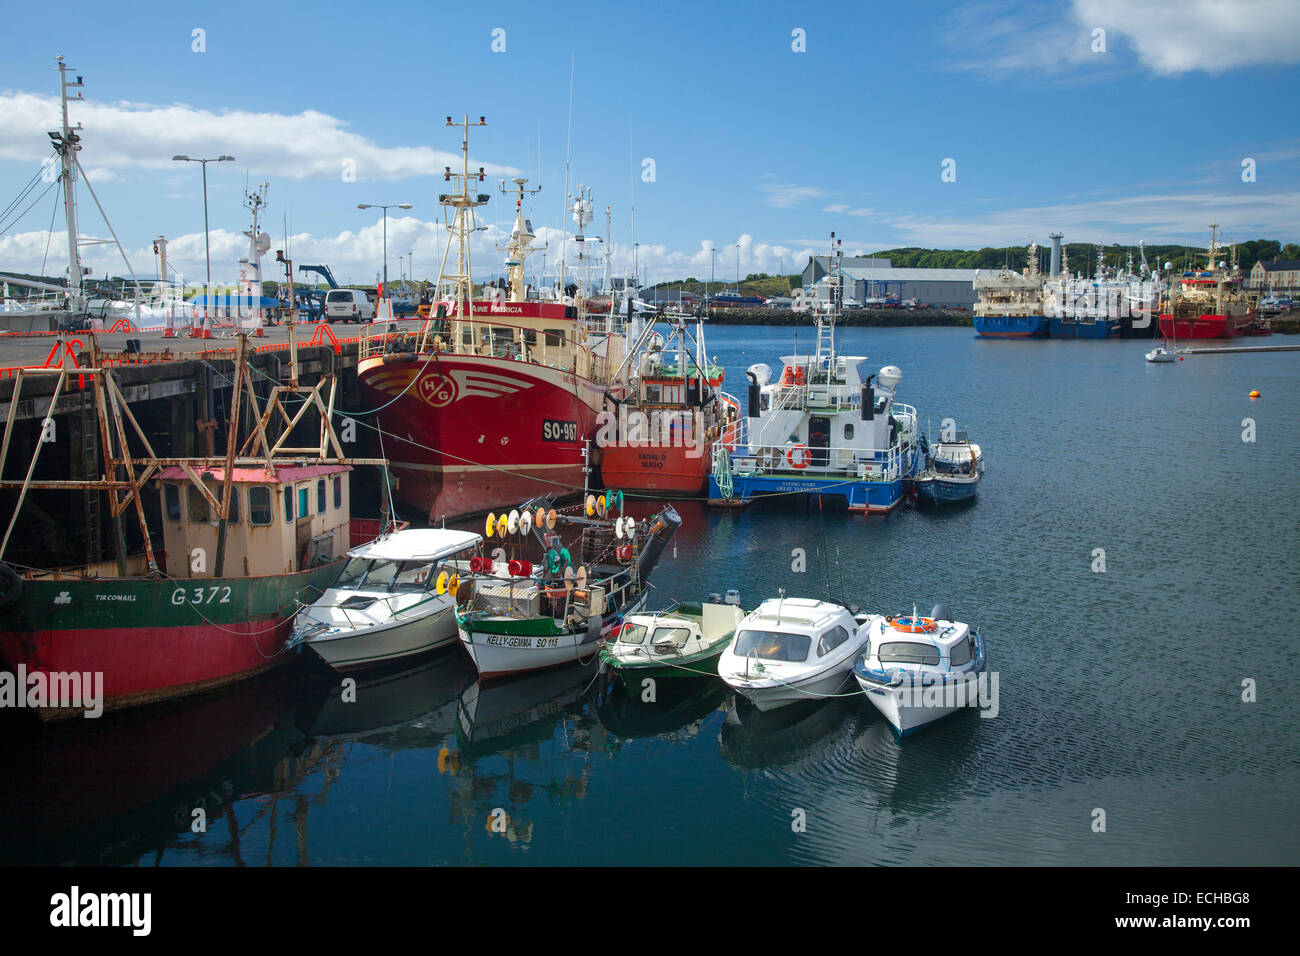 Les bateaux de pêche et chalutiers amarrés au port de Killybegs, comté de Donegal, Irlande. Banque D'Images